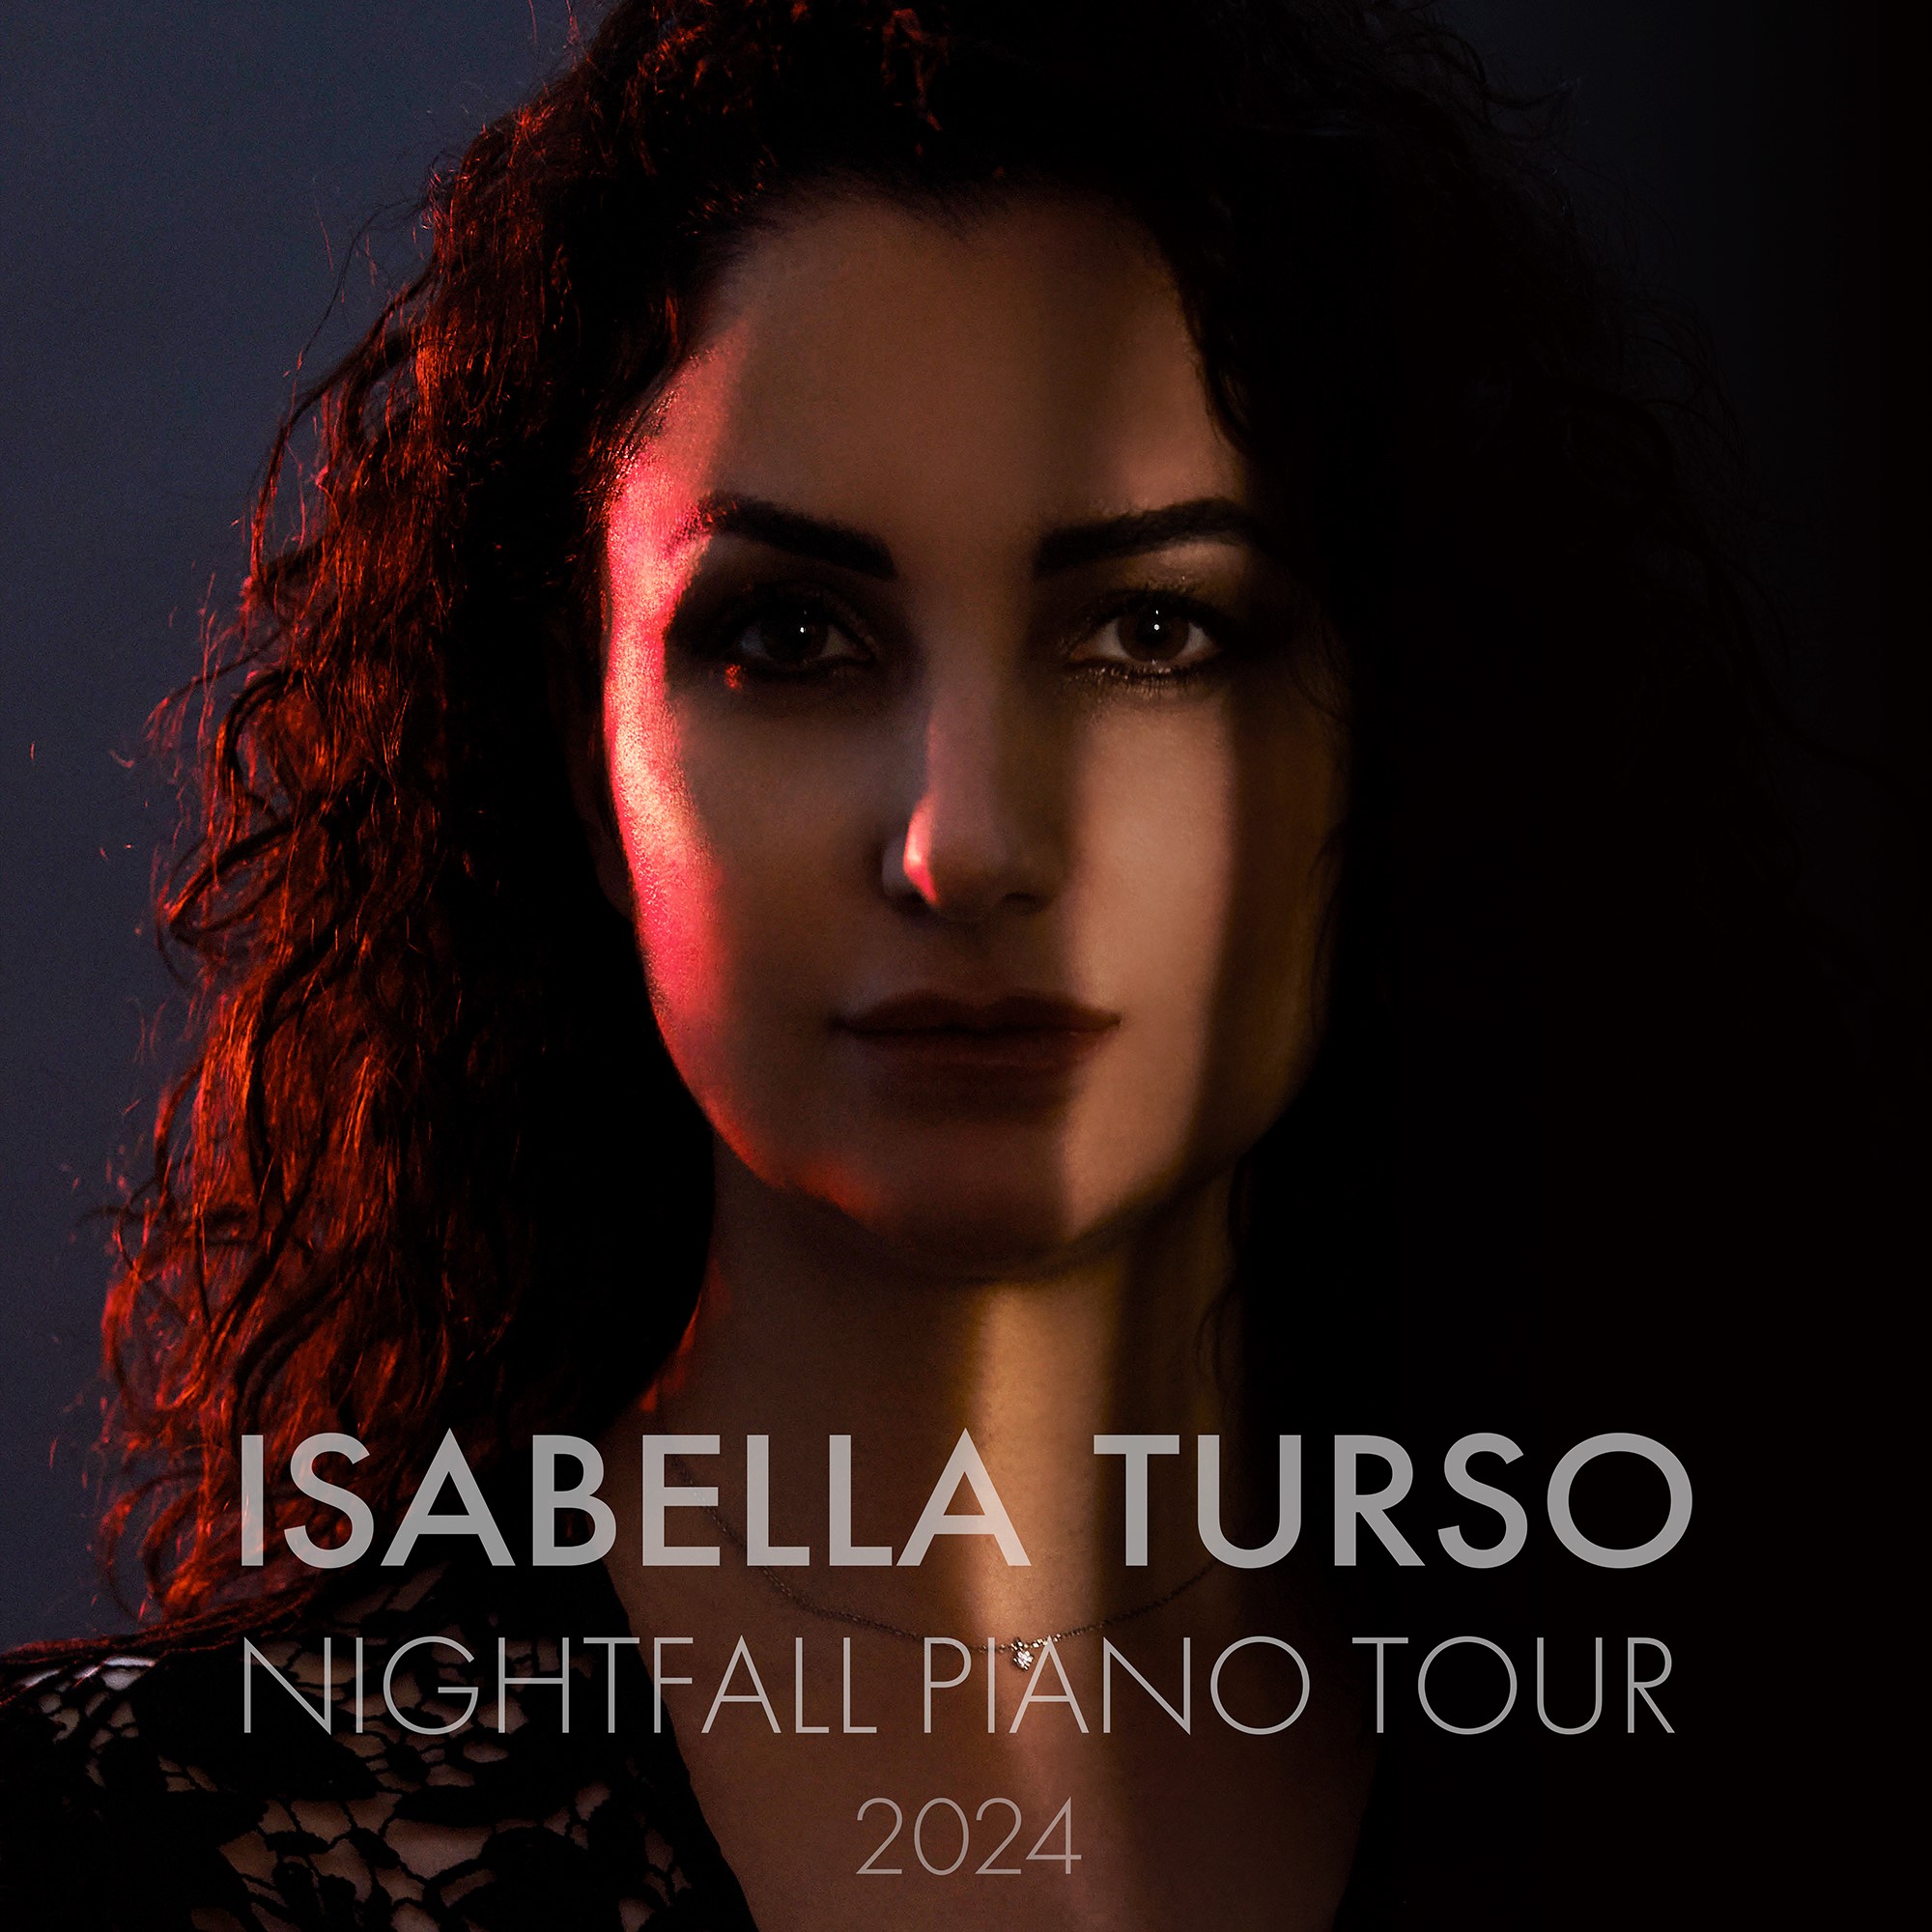 Nightfall Piano Tour locandina